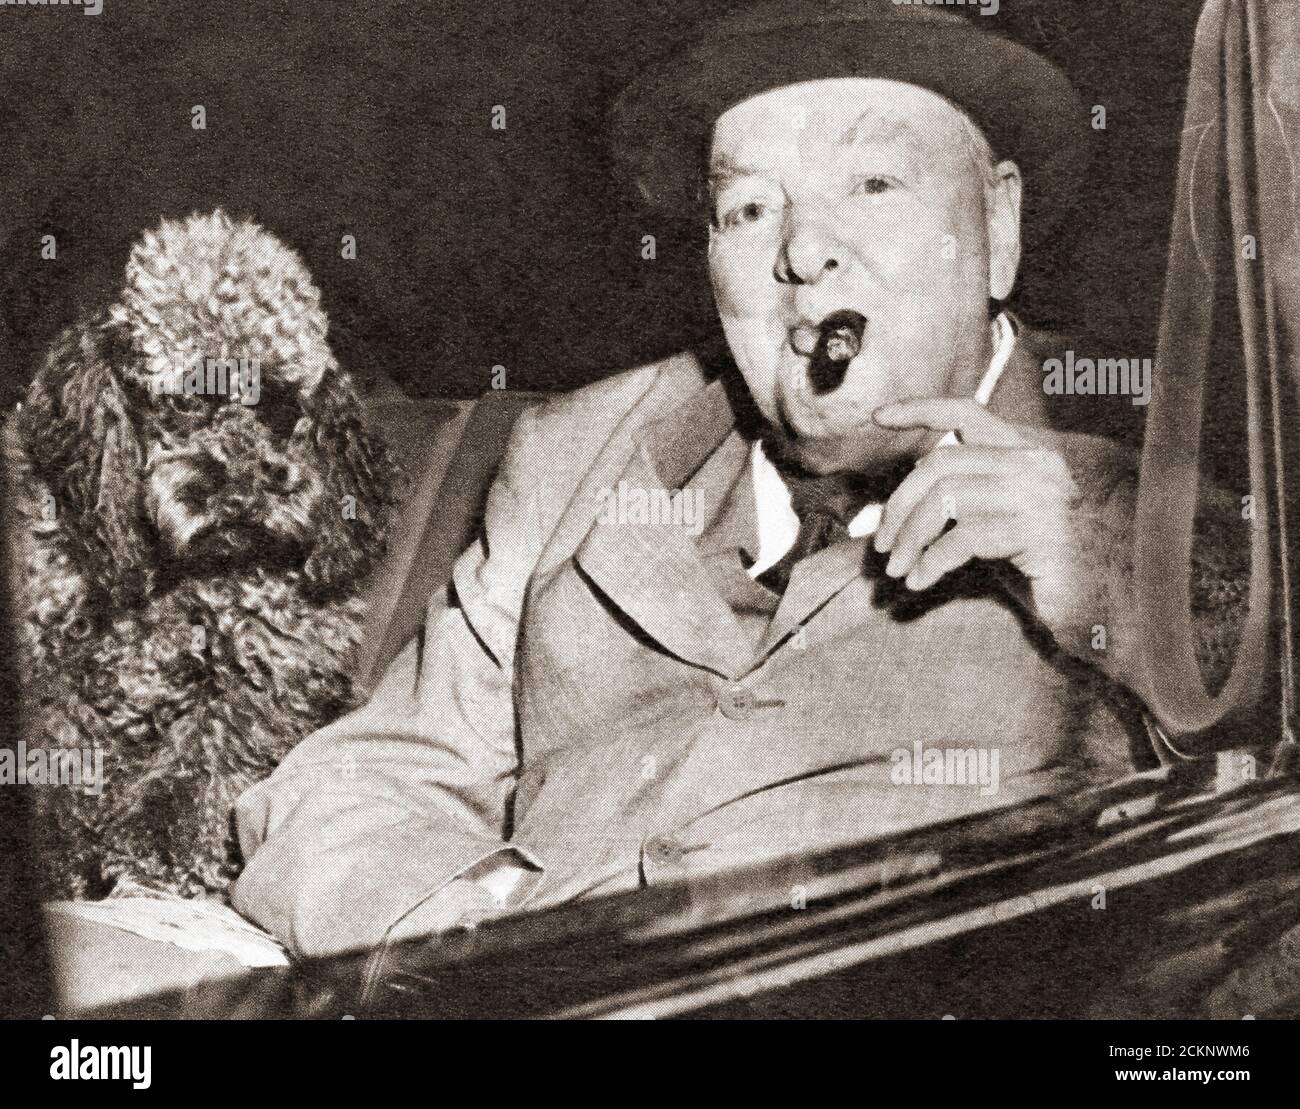 Winston Churchill, vu ici avec son animal de compagnie Rufus II Sir Winston Leonard Spencer-Churchill, 1874 – 1965. Politicien britannique, officier de l'armée, écrivain et deux fois Premier ministre du Royaume-Uni. Banque D'Images